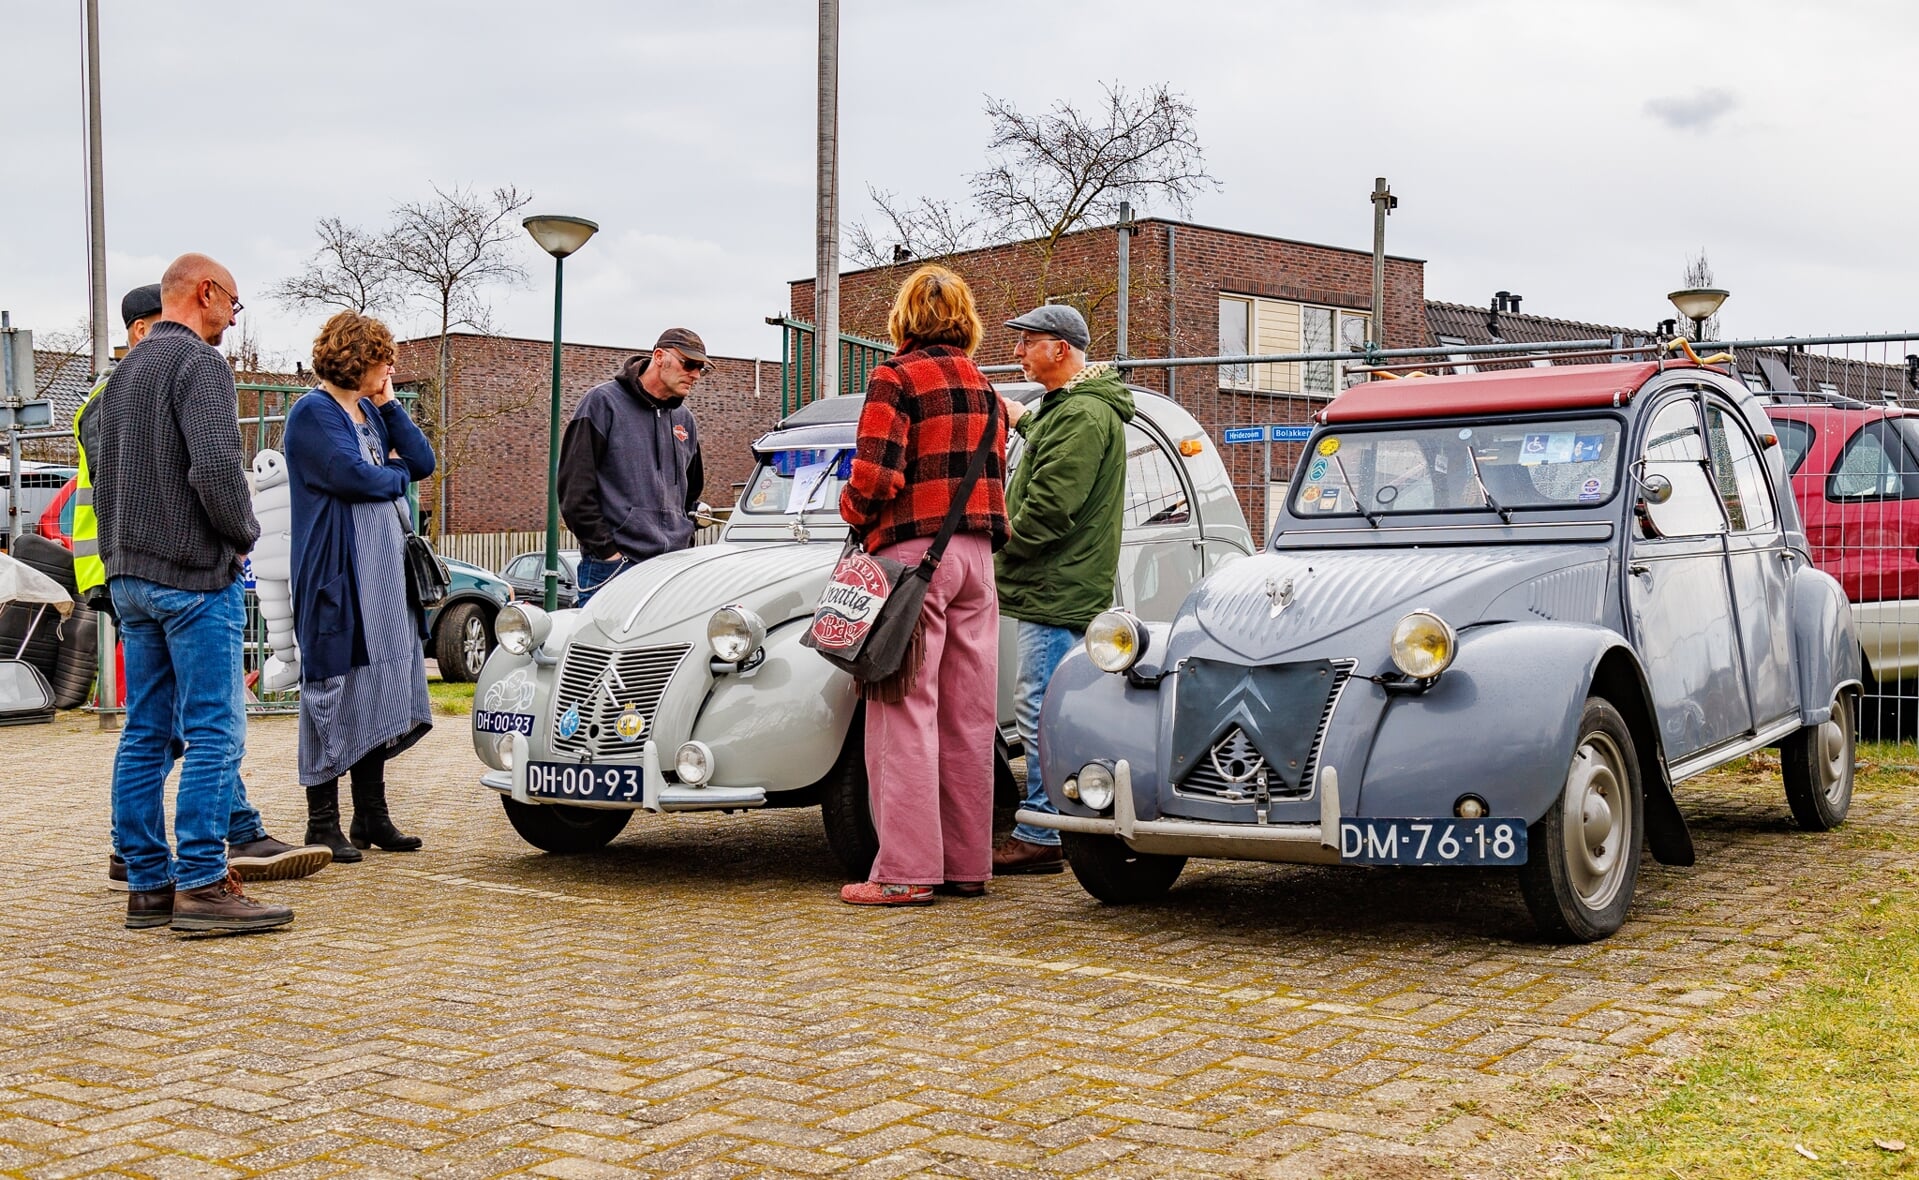 Liefhebbers van Citroën kwamen zaterdag aan hun trekken in Liempde. Daar werd een markt gehouden met oude a-types en onderdelen voor deze auto's.